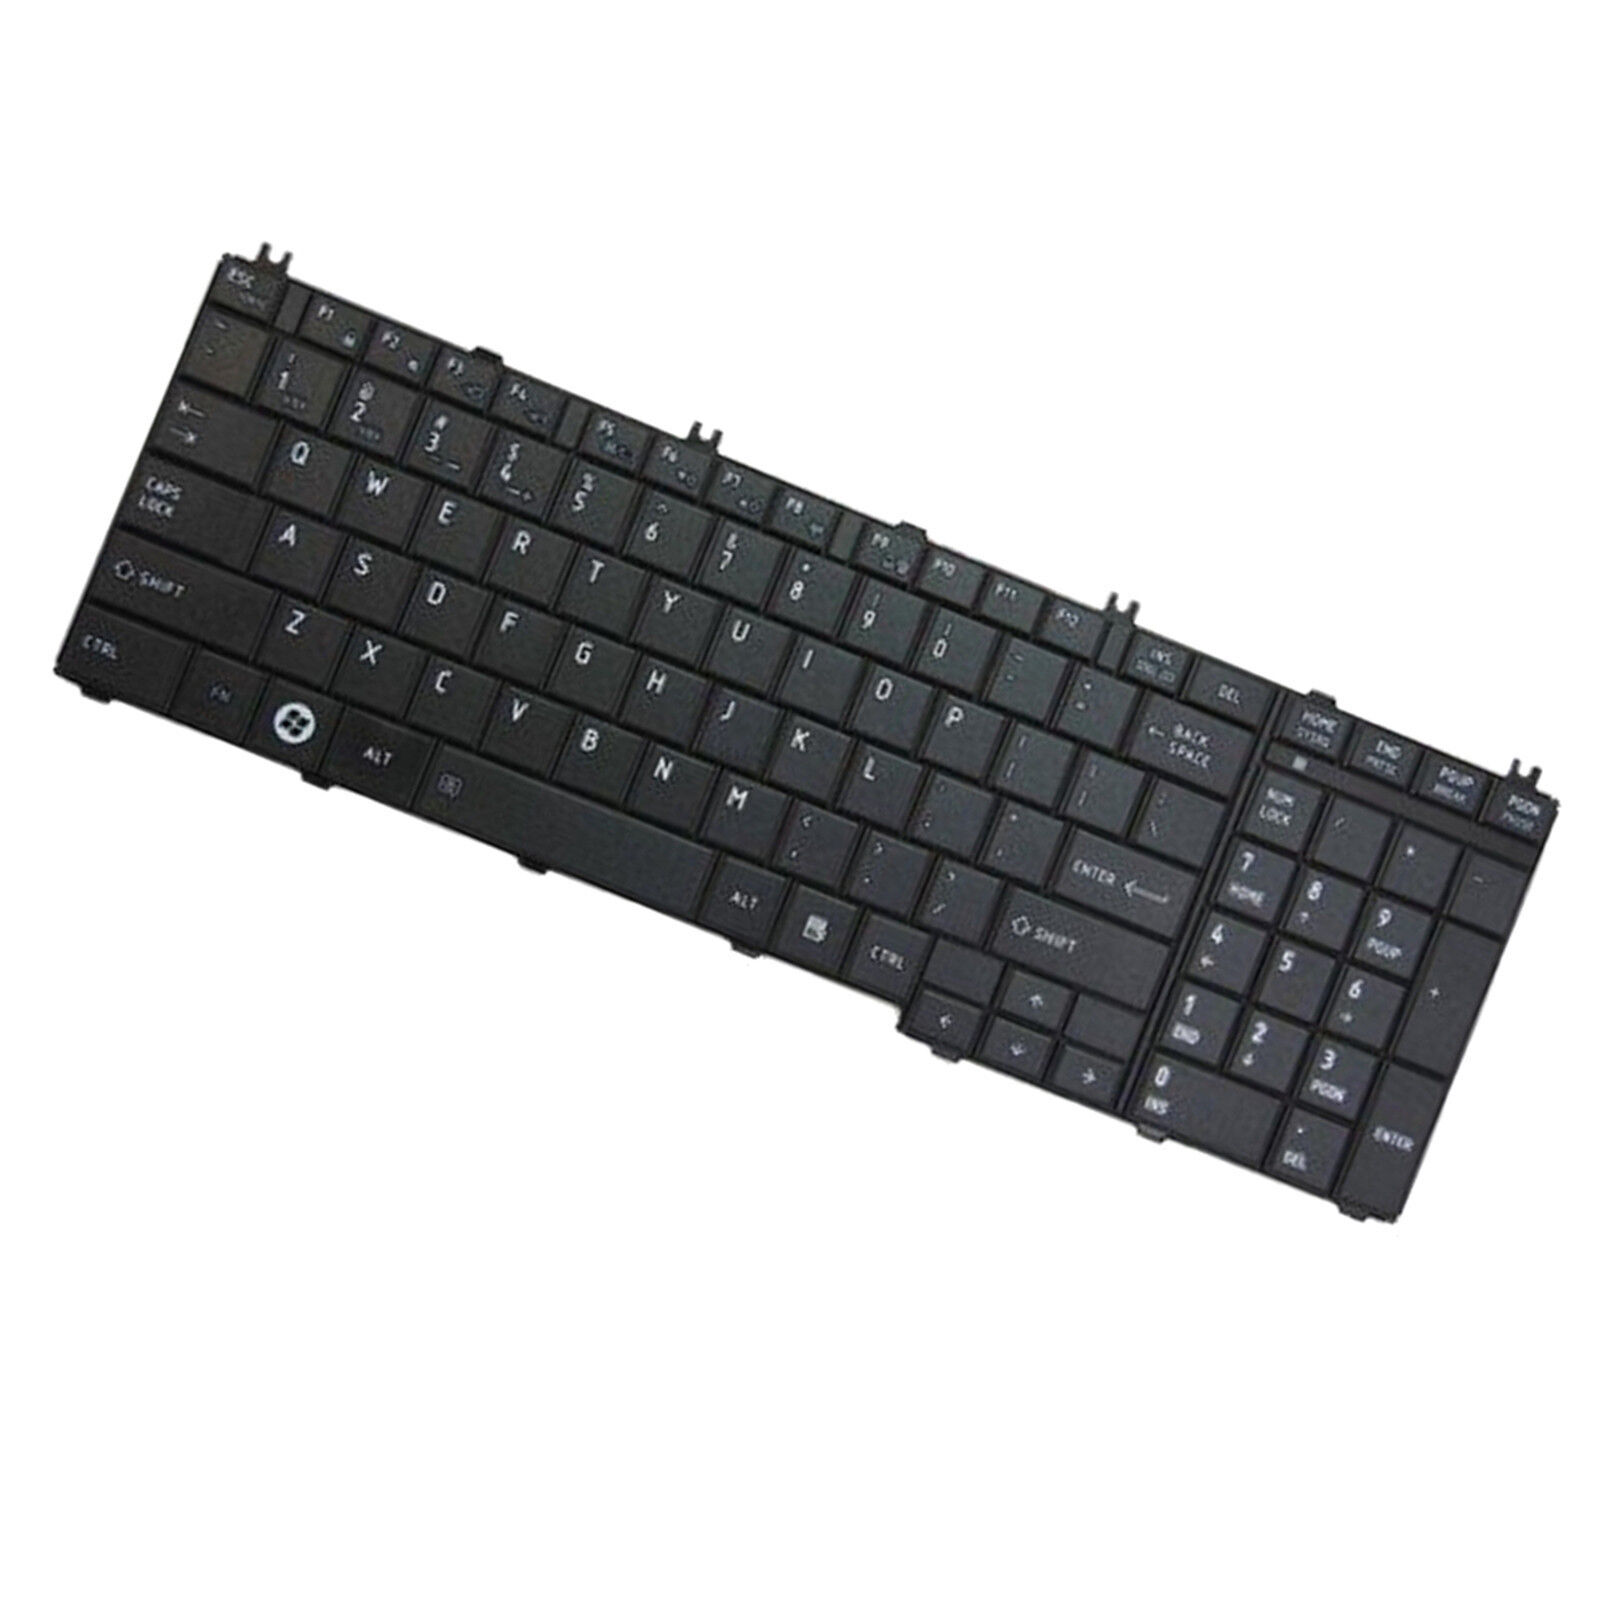 HQRP US Keyboard for Toshiba L775D-S7223, L775D-S7224, L775D-S7226, L775D-S7228